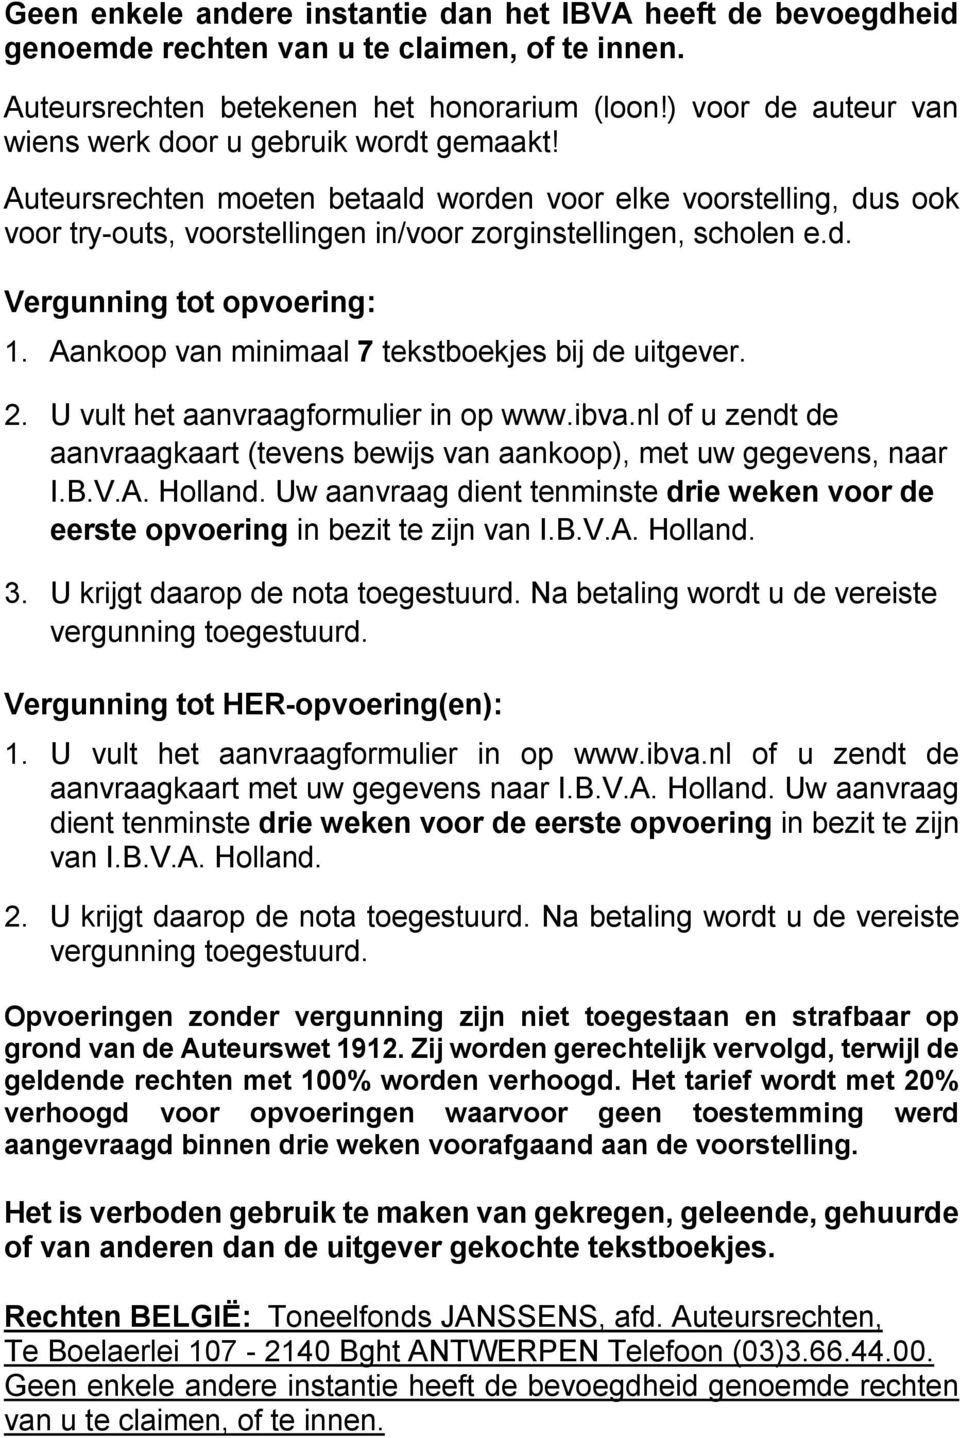 Aankoop van minimaal 7 tekstboekjes bij de uitgever. 2. U vult het aanvraagformulier in op www.ibva.nl of u zendt de aanvraagkaart (tevens bewijs van aankoop), met uw gegevens, naar I.B.V.A. Holland.